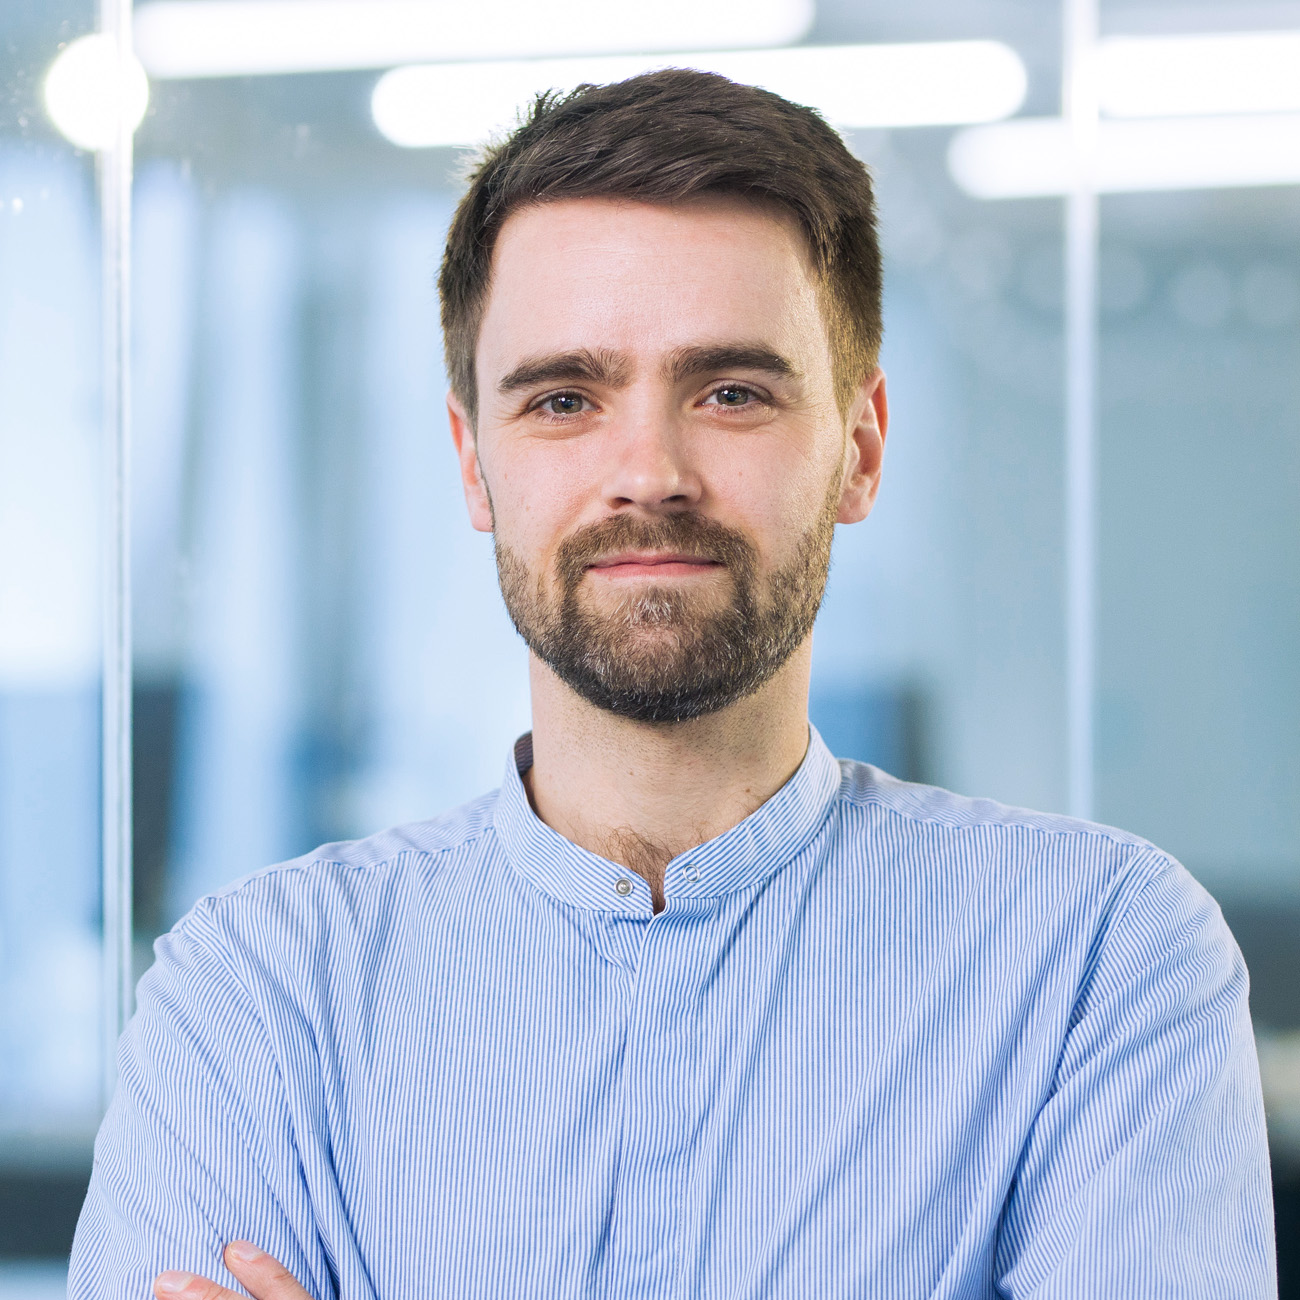 Porträtfoto von Christian Kaatz, Head of Engineering beim DigitalService